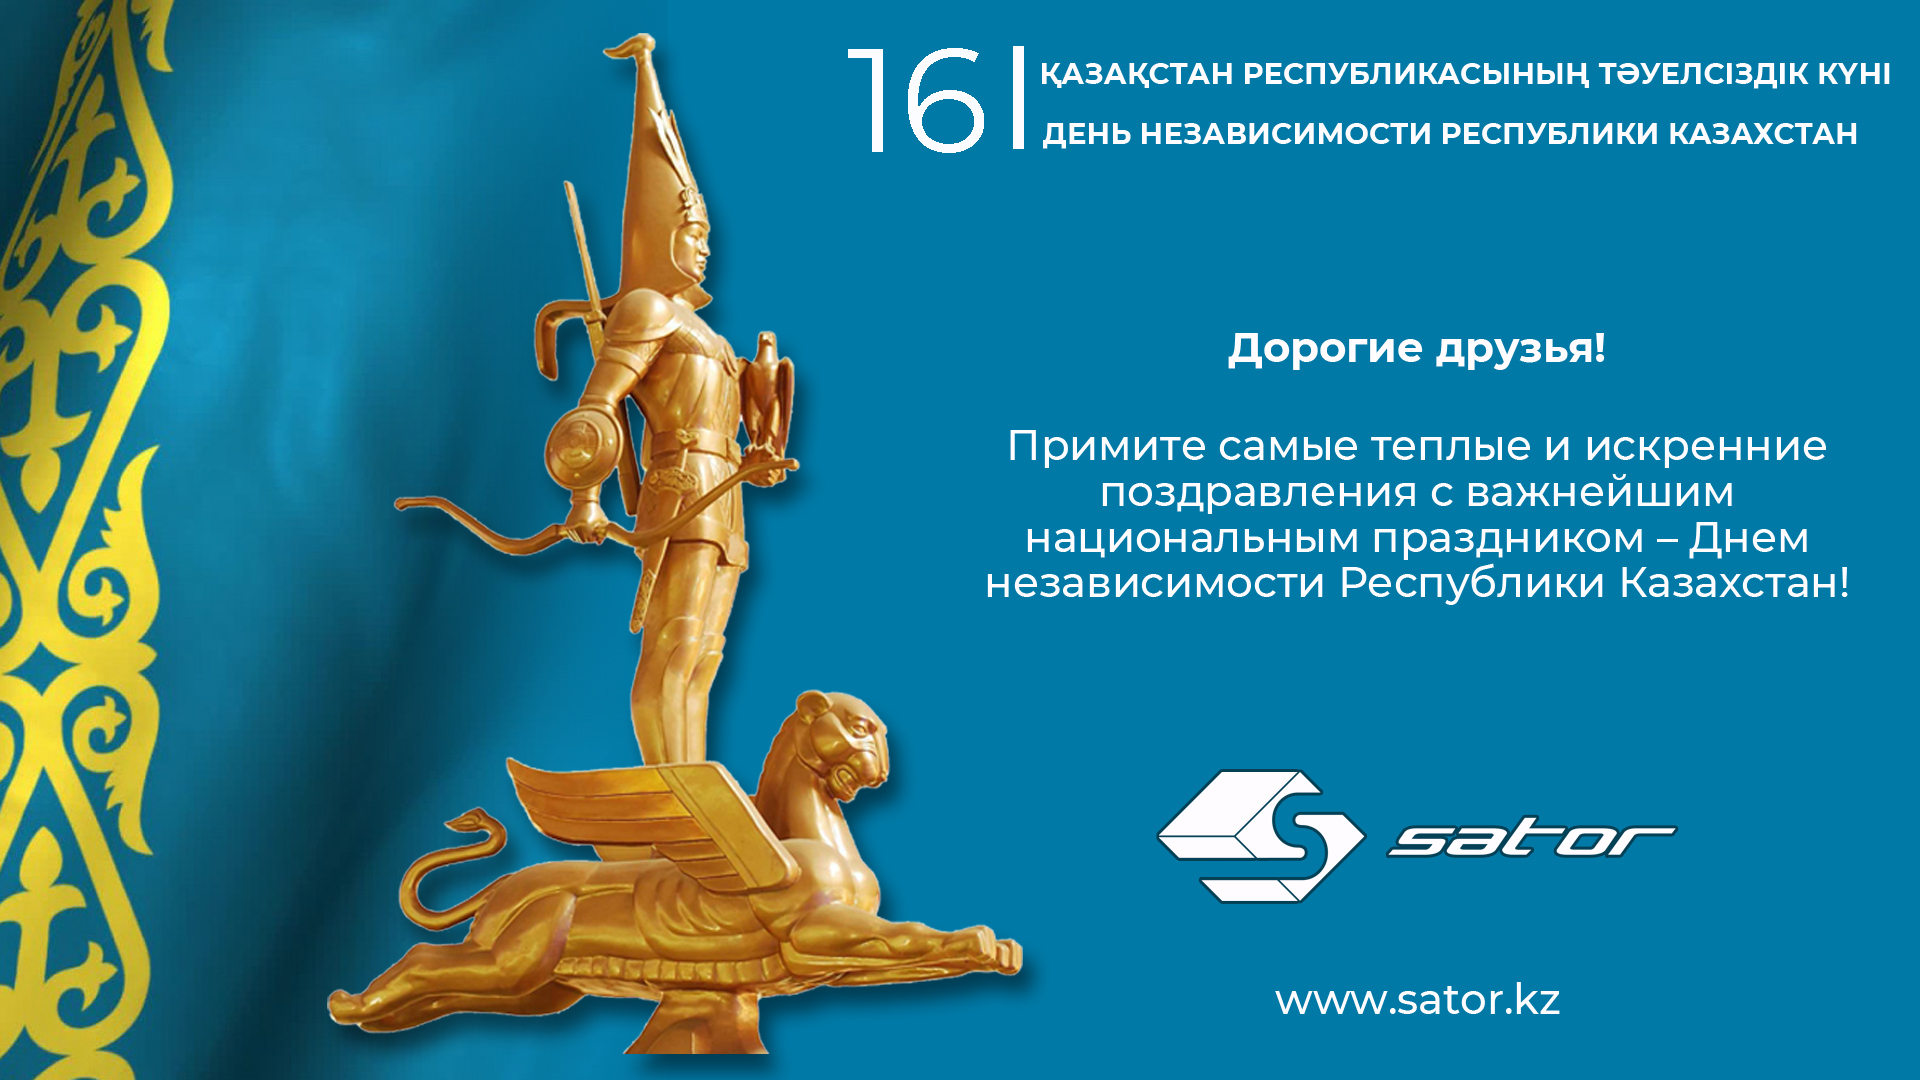 C Днем Независимости Республики Казахстан!